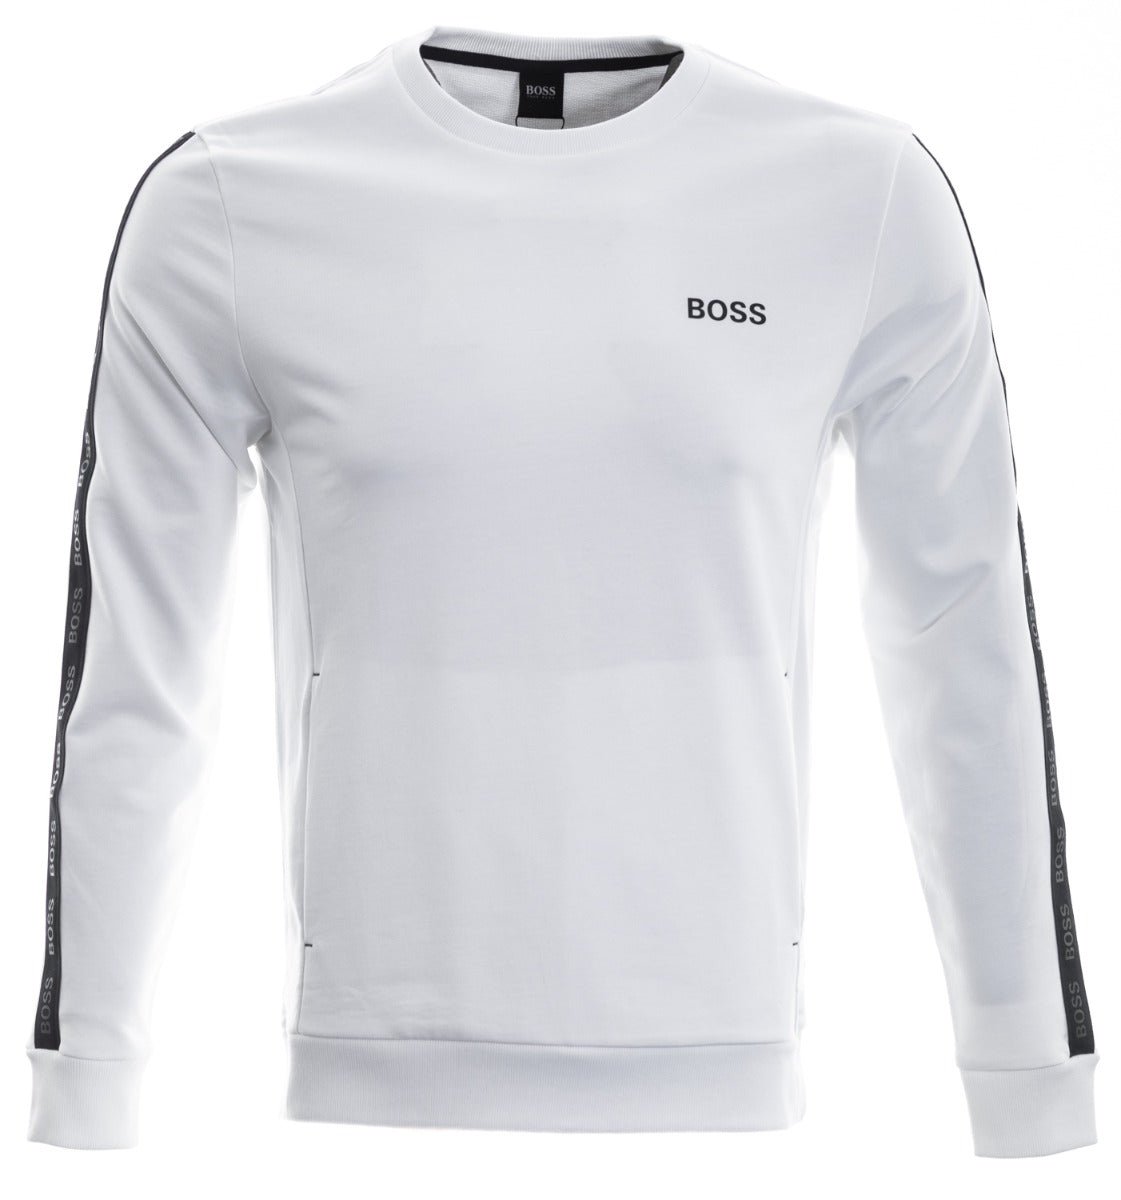 BOSS Heritage Sweatshirt Sweat Top in White Main